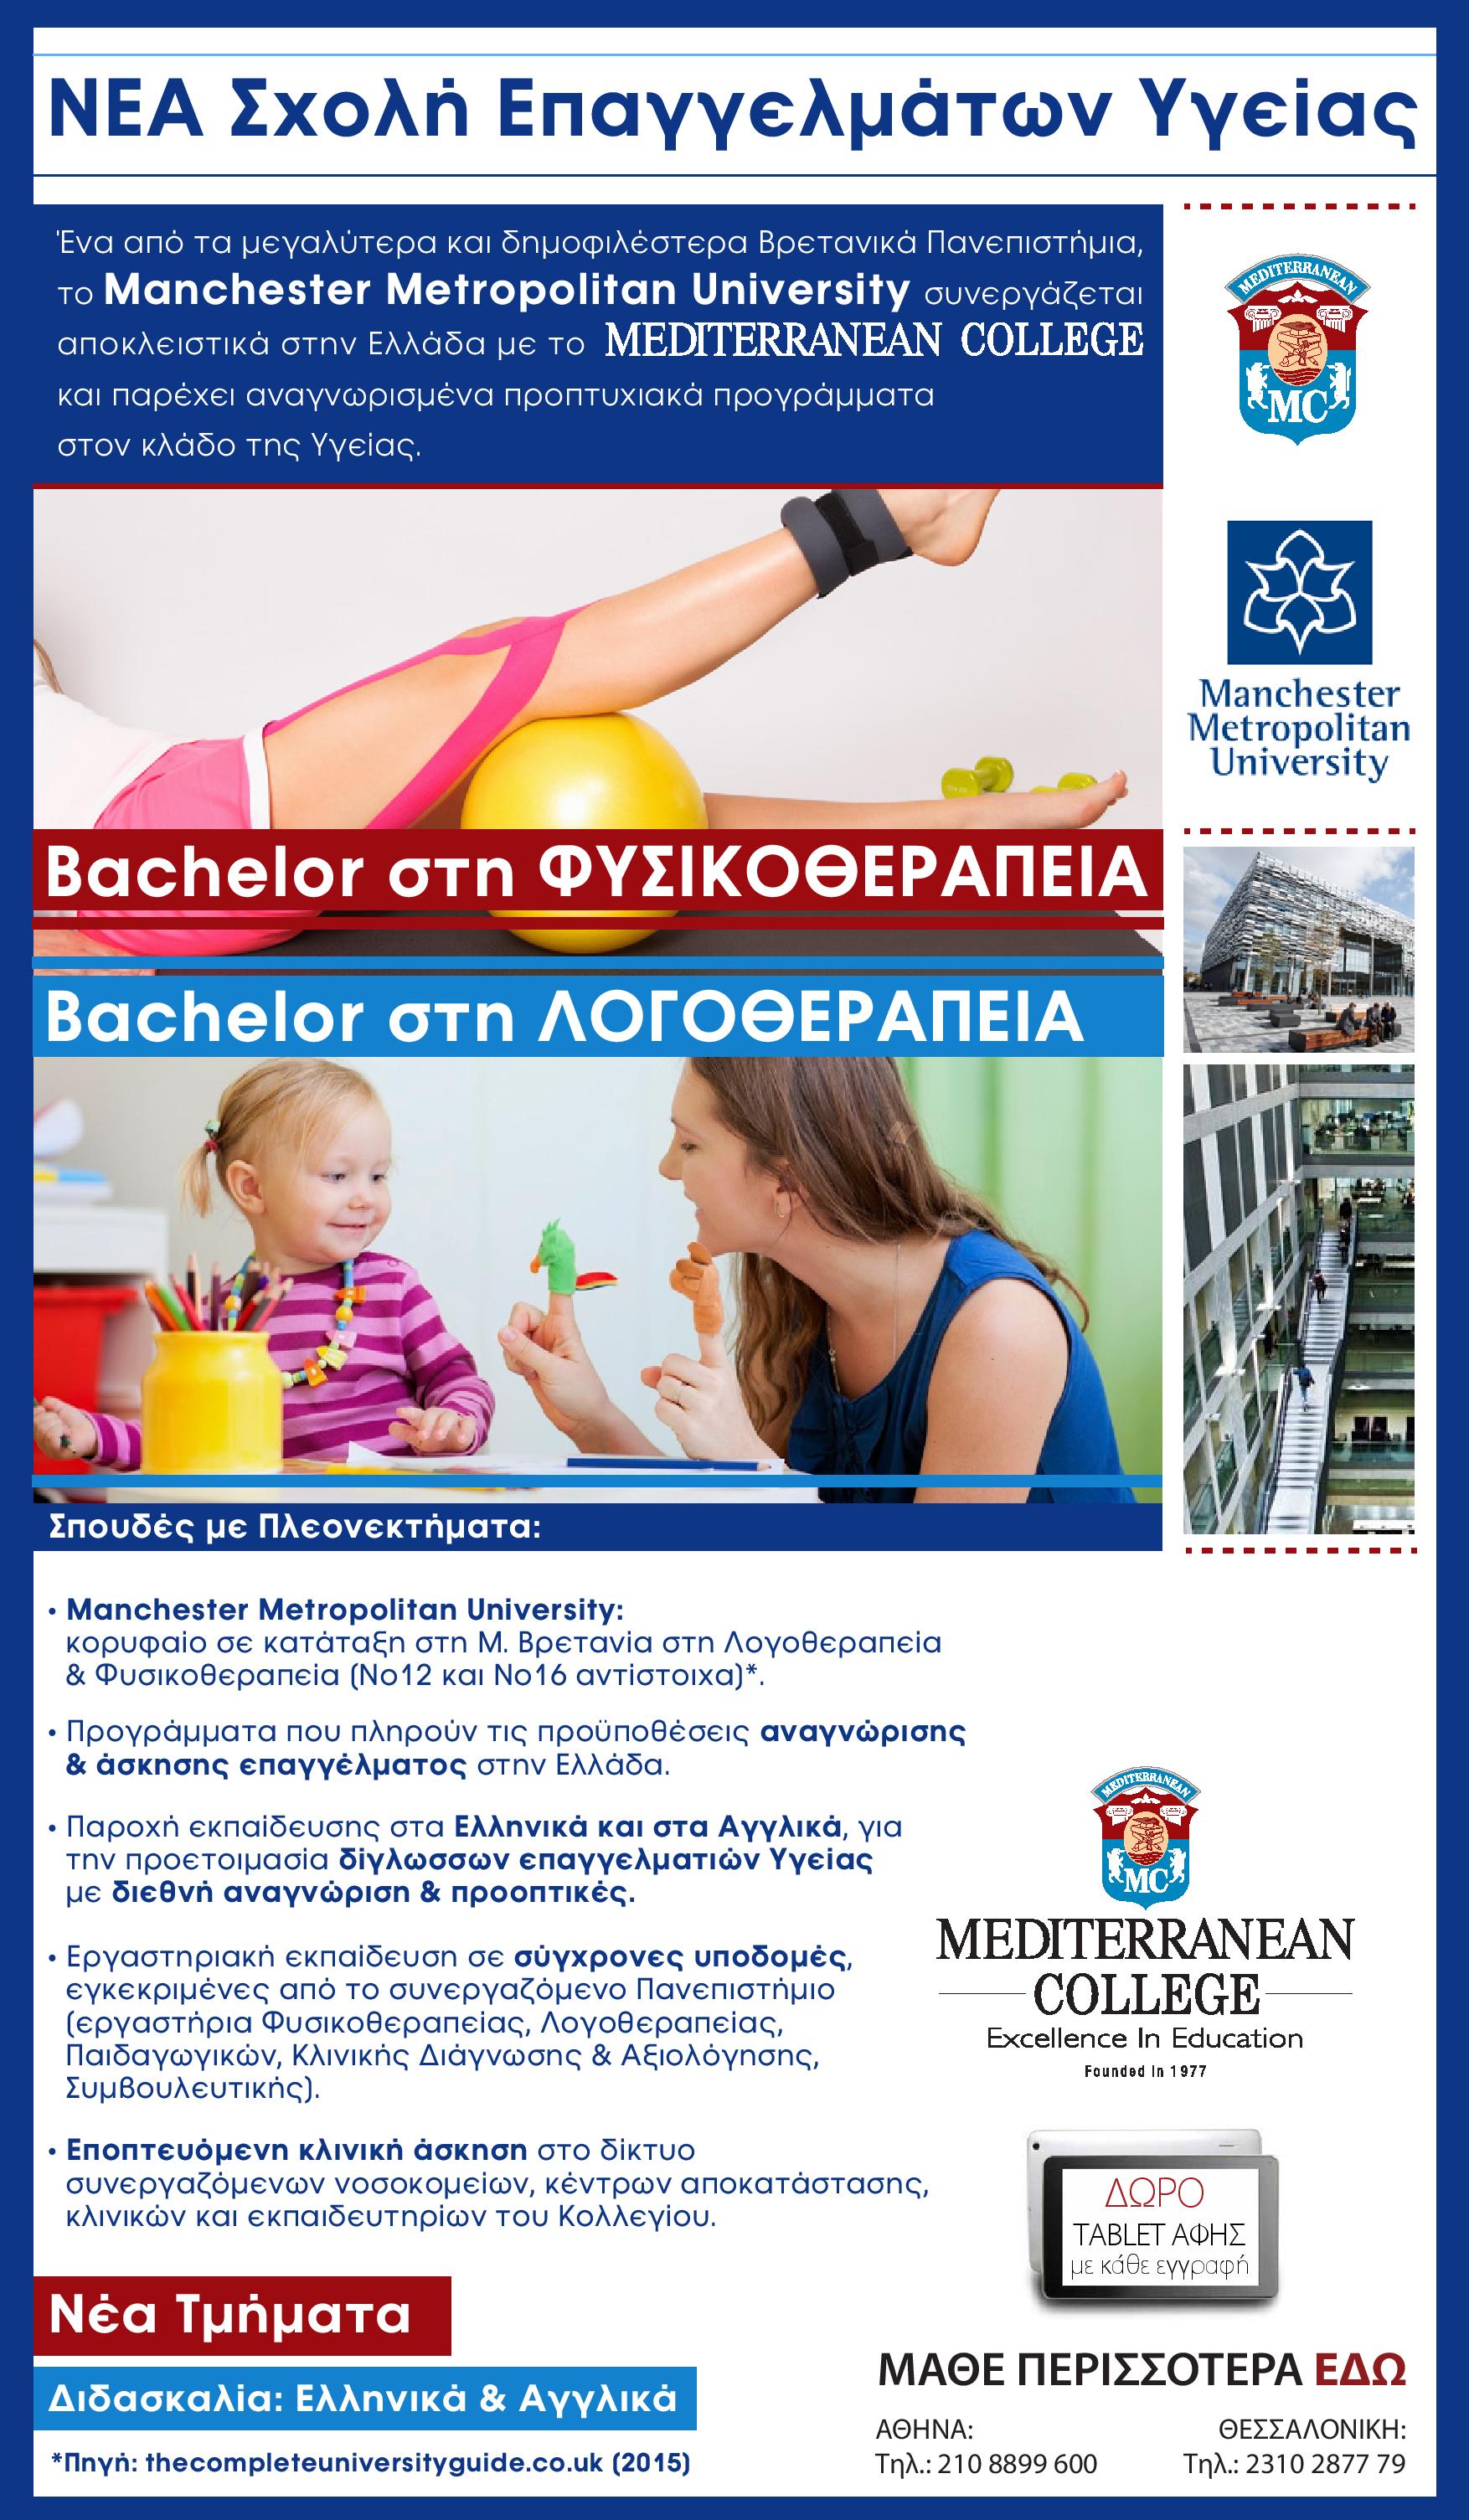 Το Manchester Metropolitan University εγκαινιάζει την παρουσία του στη Θεσσαλονίκη σε συνεργασία με το Mediterranean College